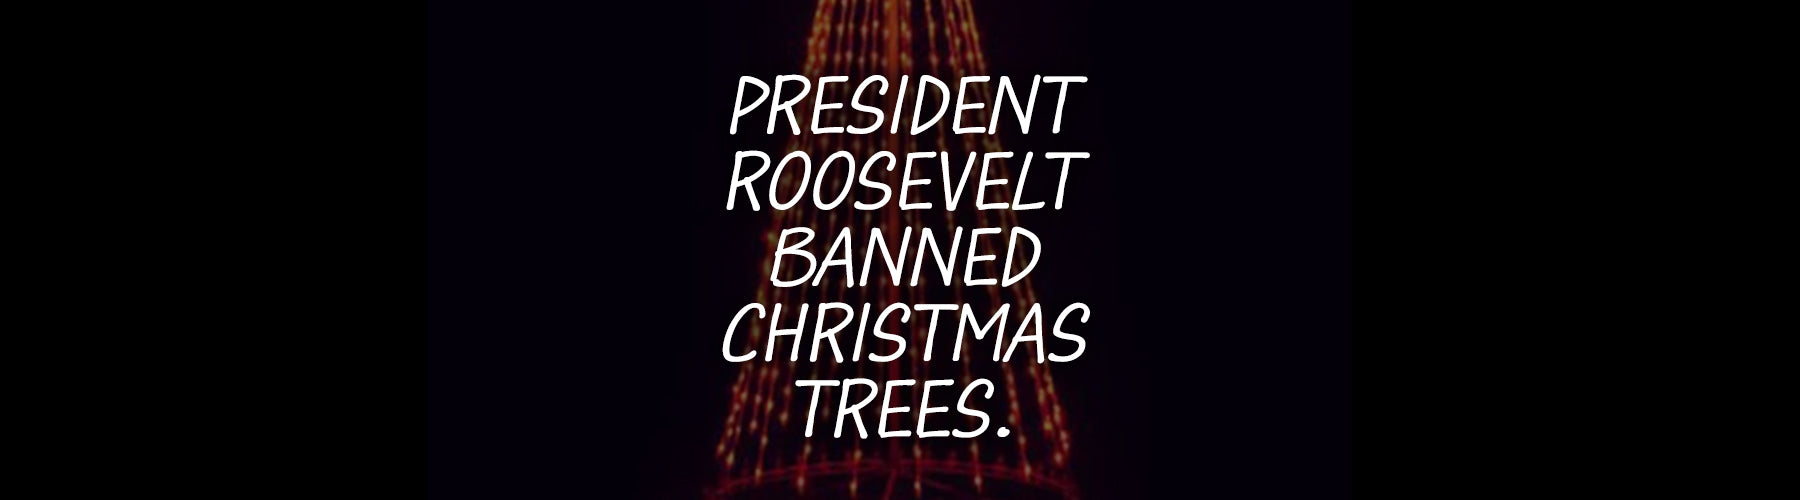 President Roosevelt Banned Christmas Trees